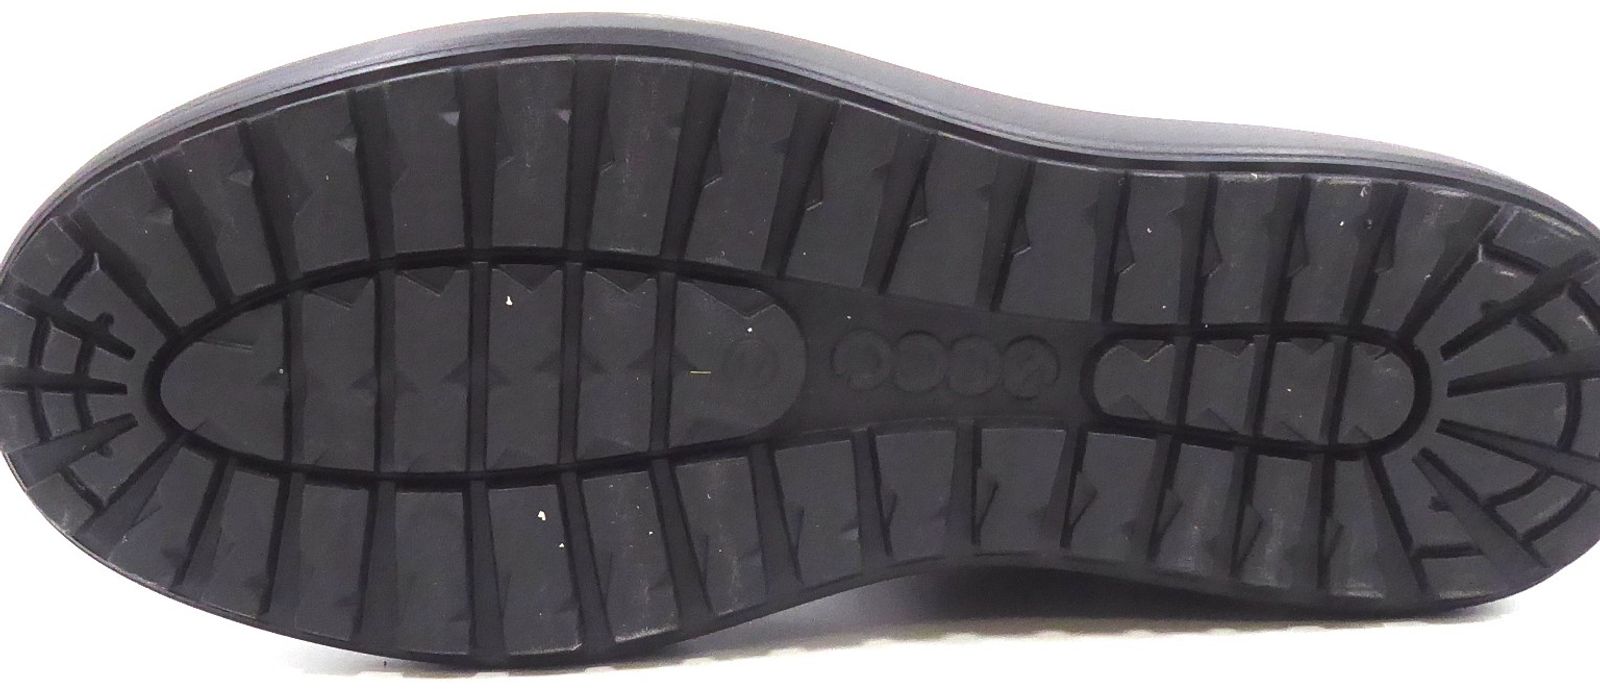 Schuh von Ecco, 430